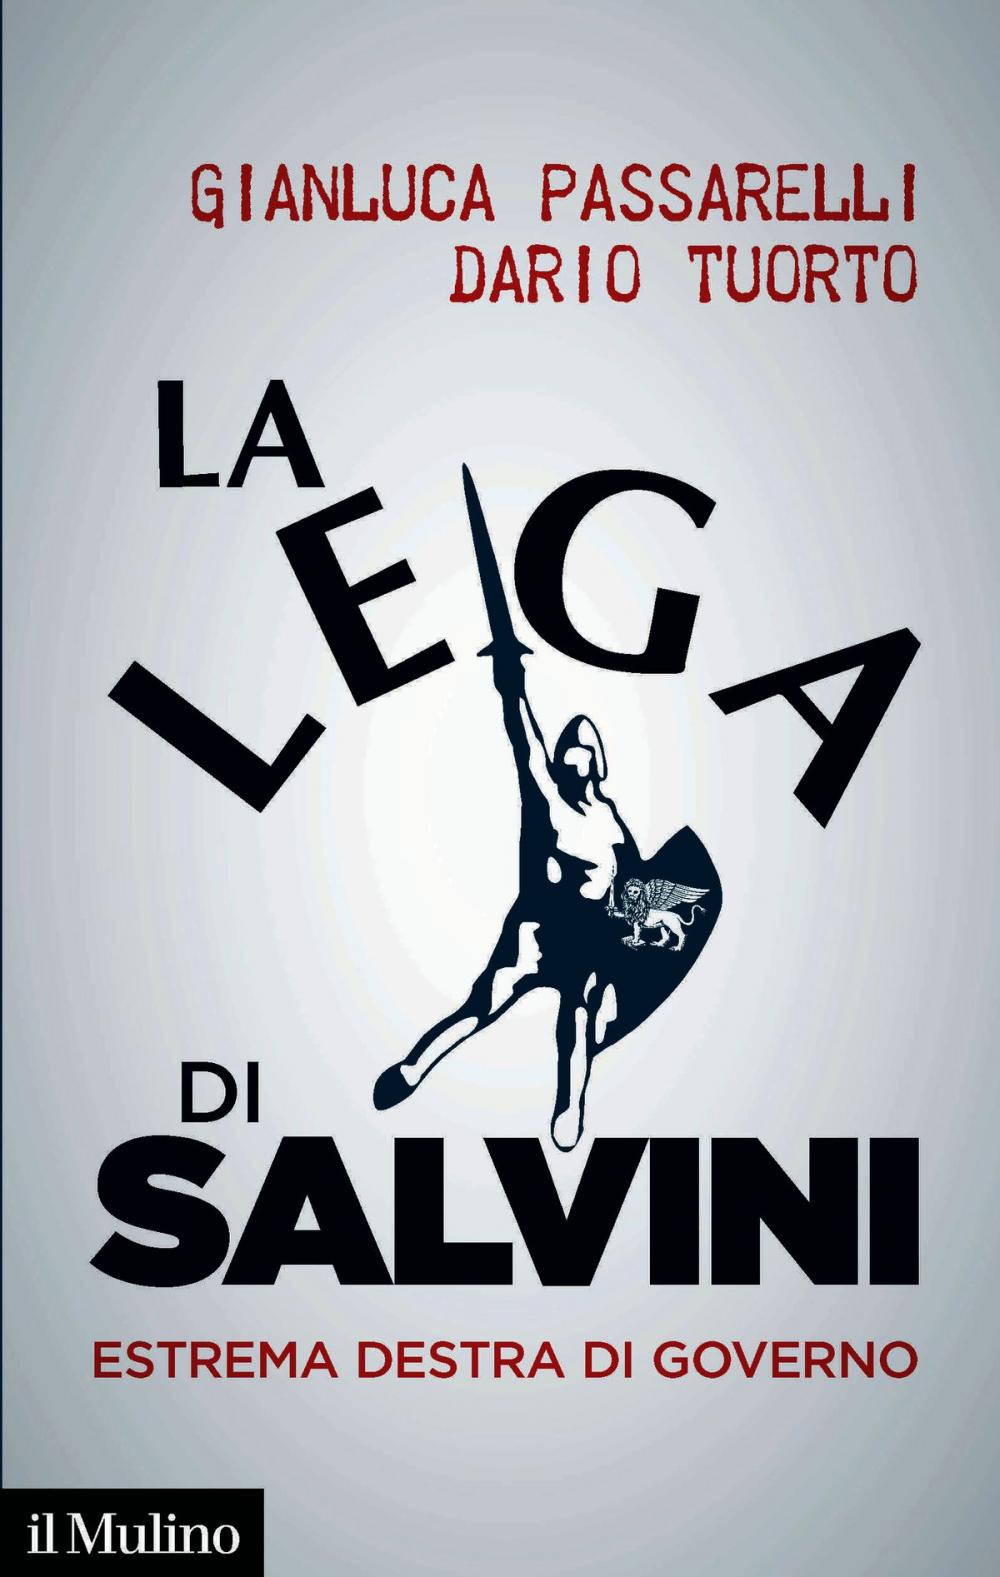 Big bigCover of La Lega di Salvini